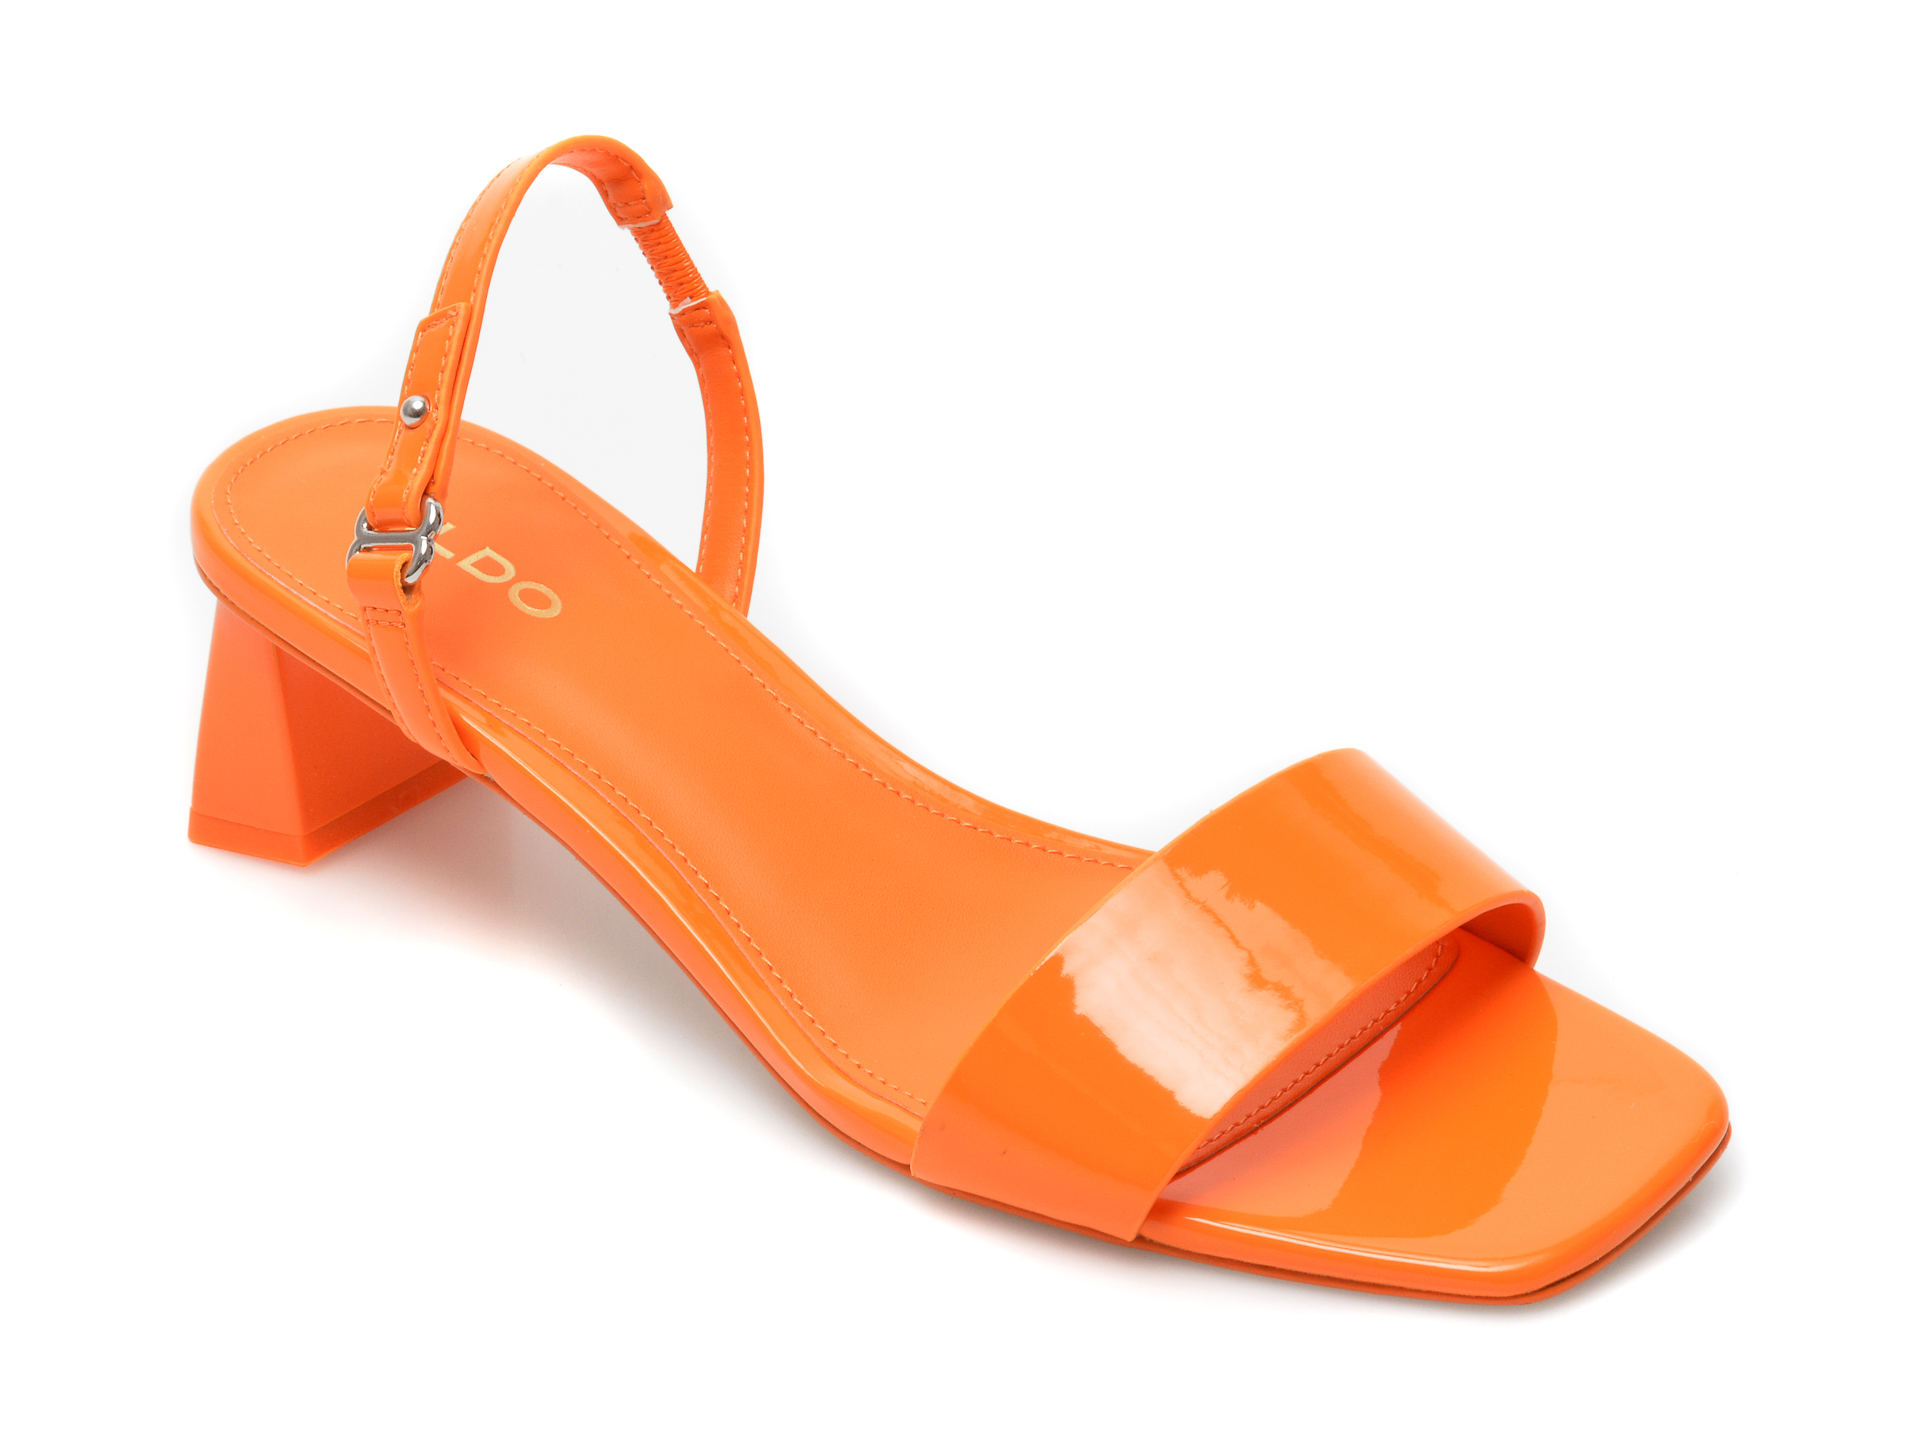 Sandale ALDO portocalii, Tysen800, din piele ecologica Aldo Aldo